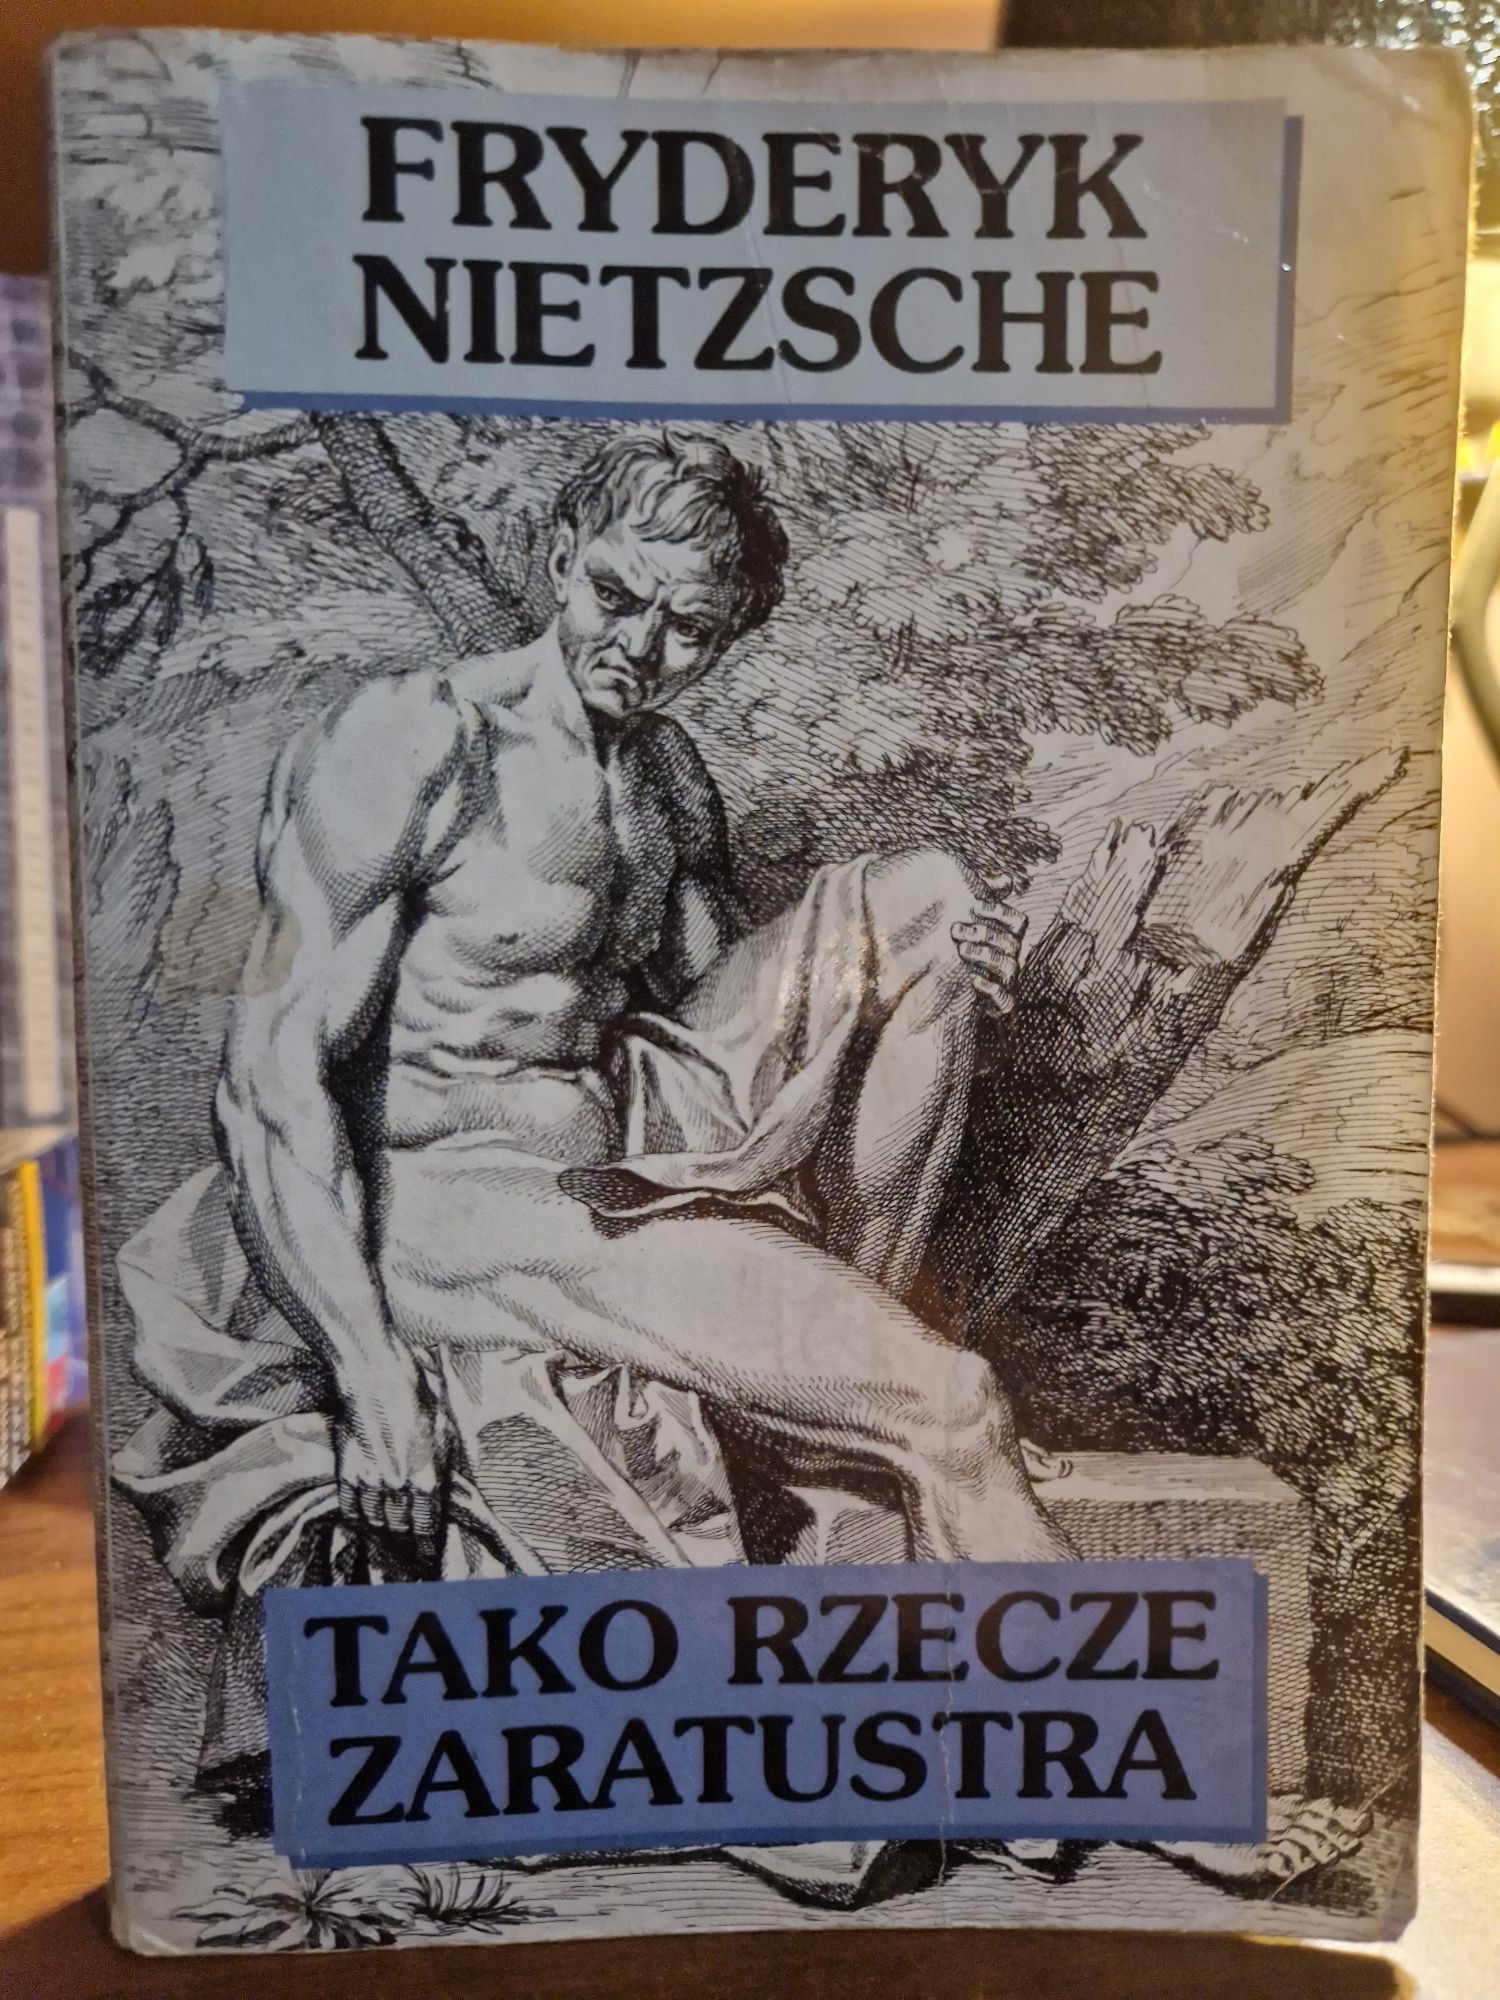 Tako rzecze Zaratustra, Fryderyk Nietzsche